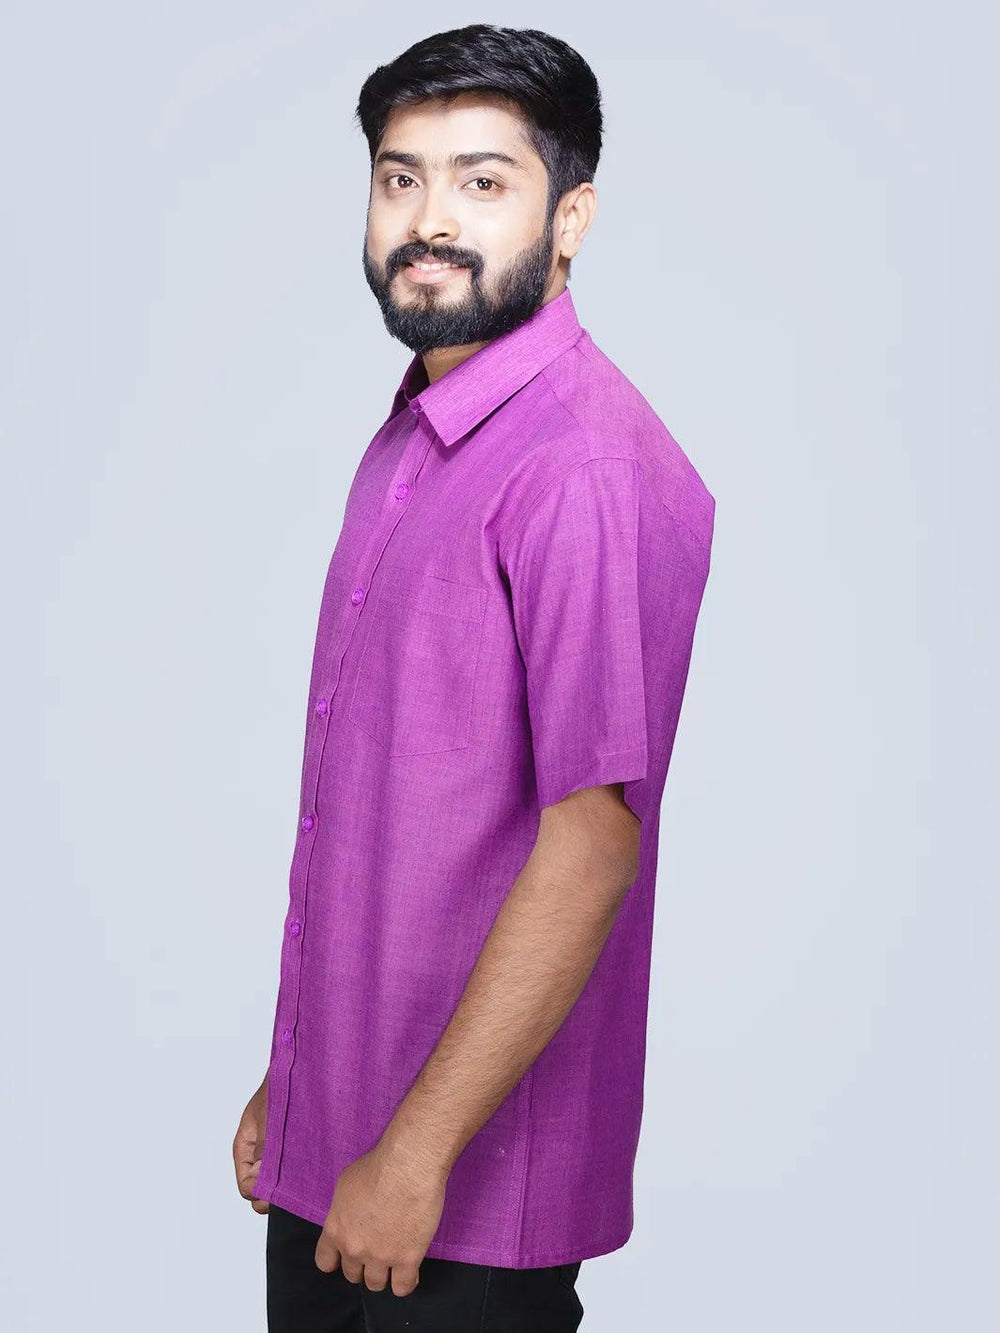 Dual Tone Handwoven Organic Cotton Formal Men Shirt - WeaversIndia